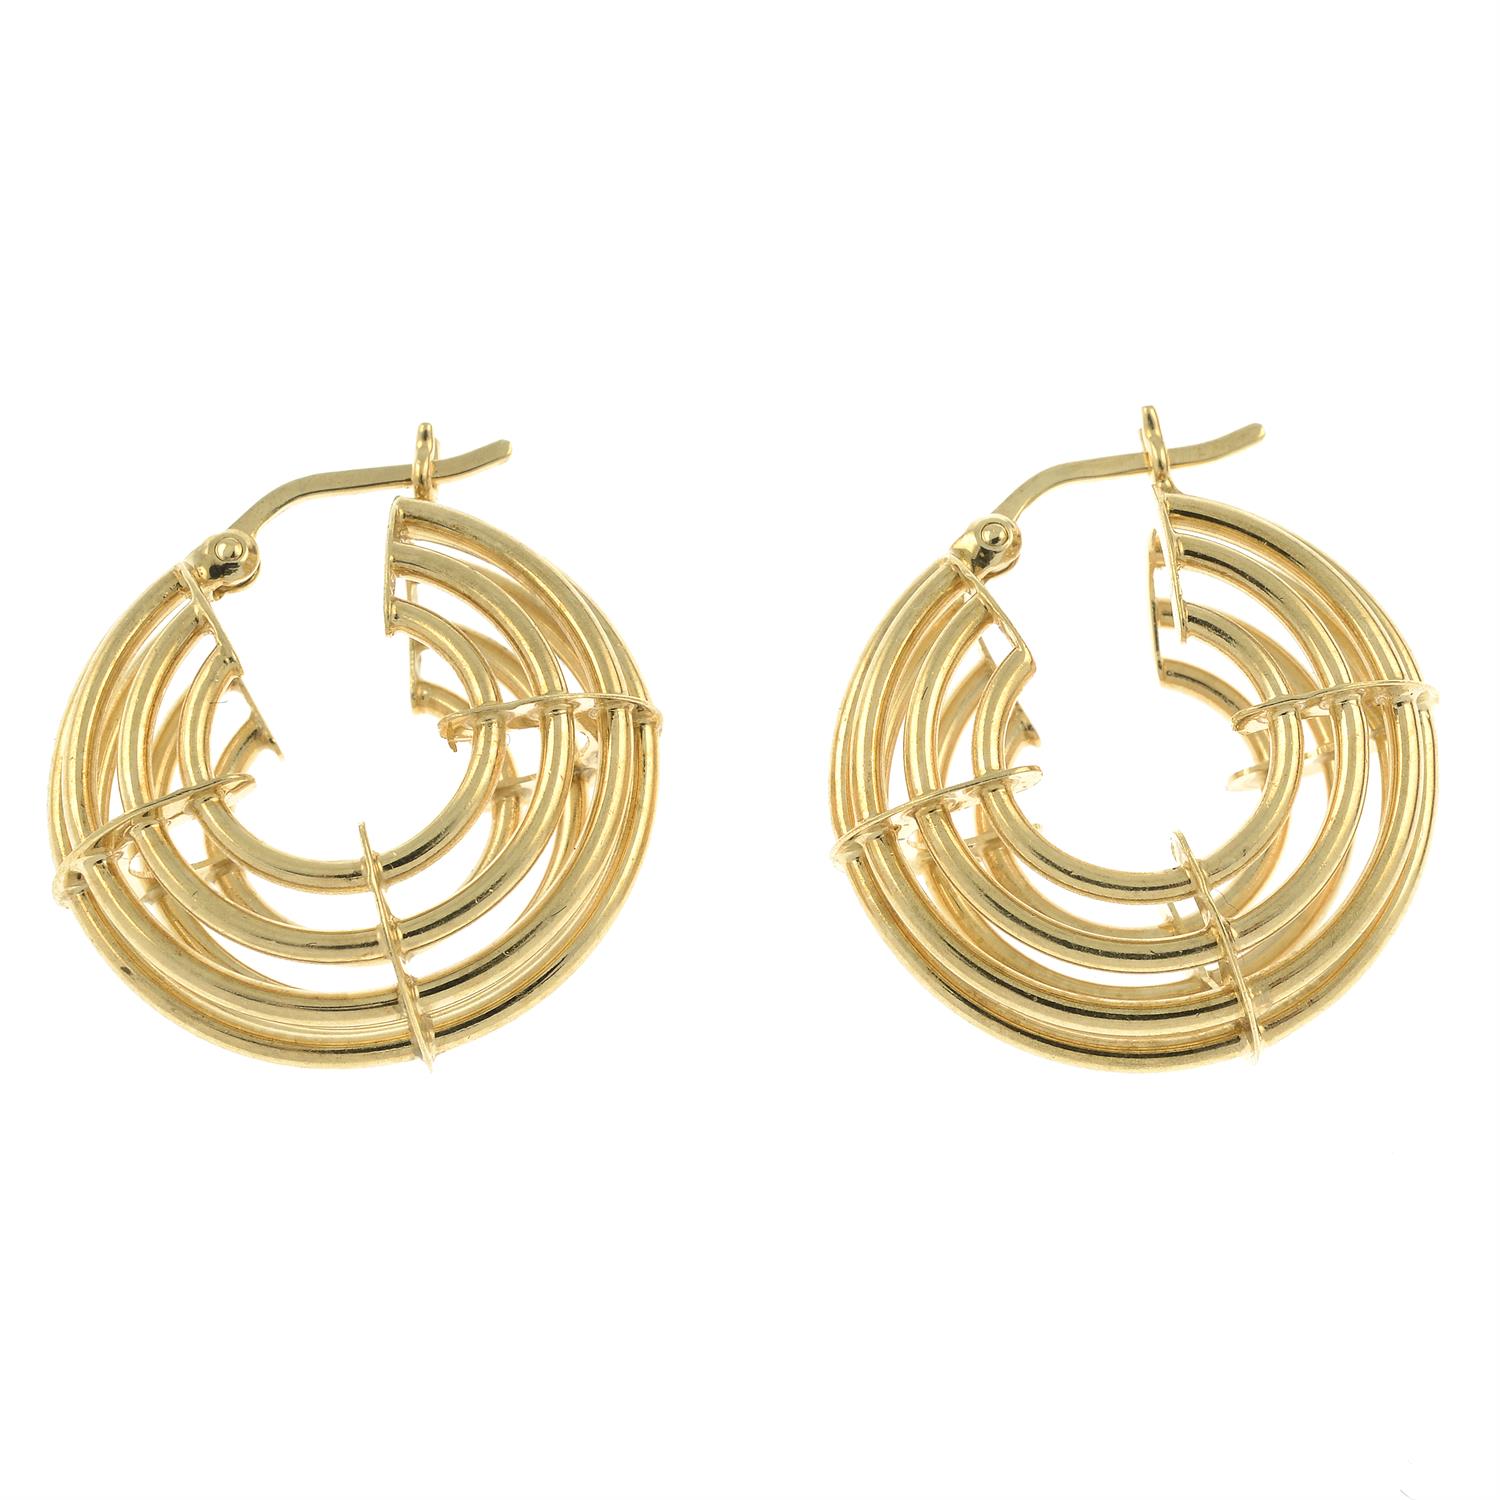 A pair of 9ct gold openwork hoop earrings.